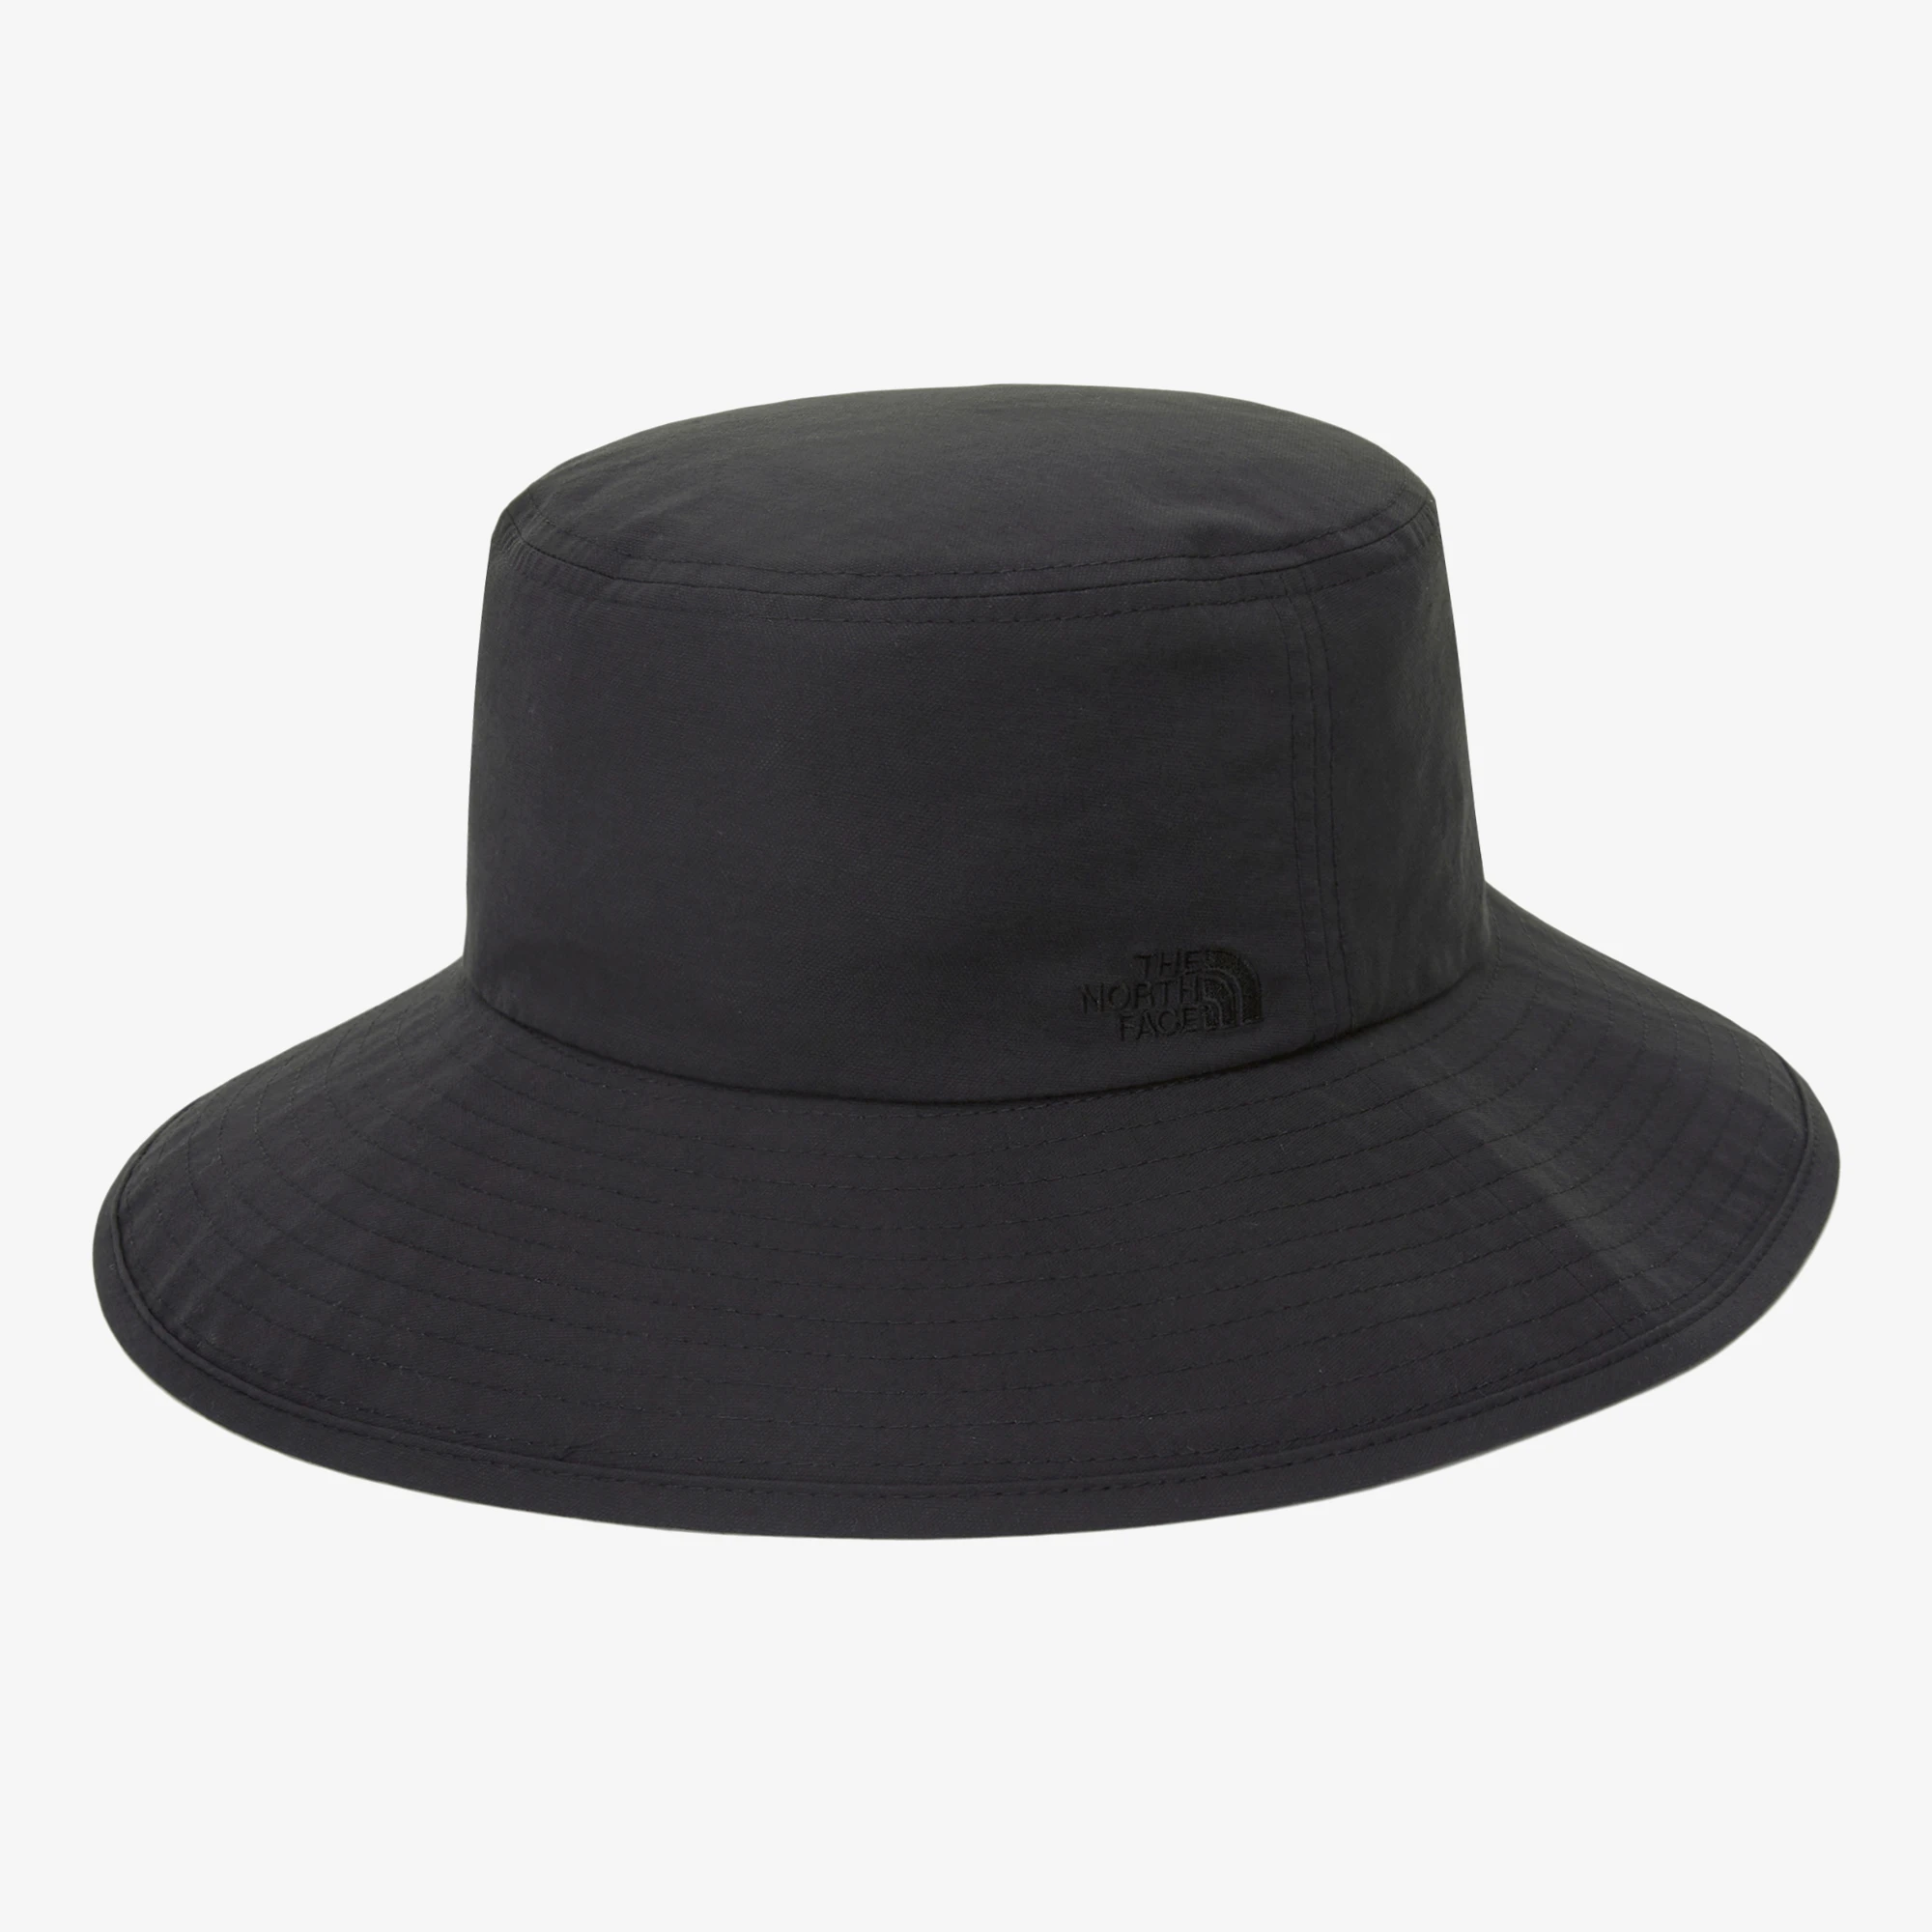 推荐【Brilliant|别样周年庆特惠】北面女士宽边帽 W'S WIDE HAT BLACK NE3HN57A商品